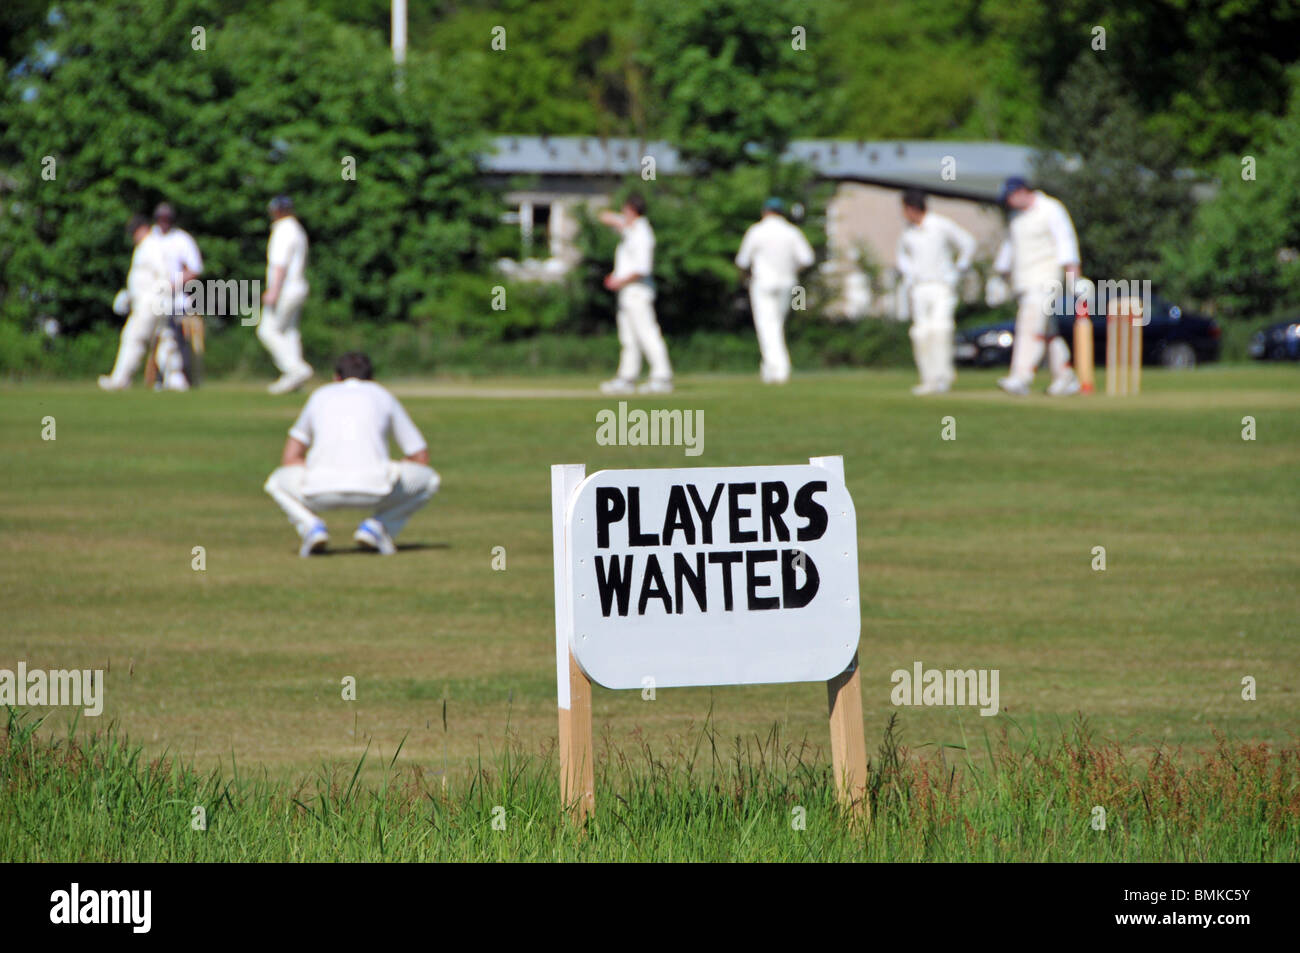 Village vert compétition amatuer match de cricket d'été en cours et signe publicitaire pour les joueurs recherché Navestock Brentwood Essex Angleterre Royaume-Uni Banque D'Images